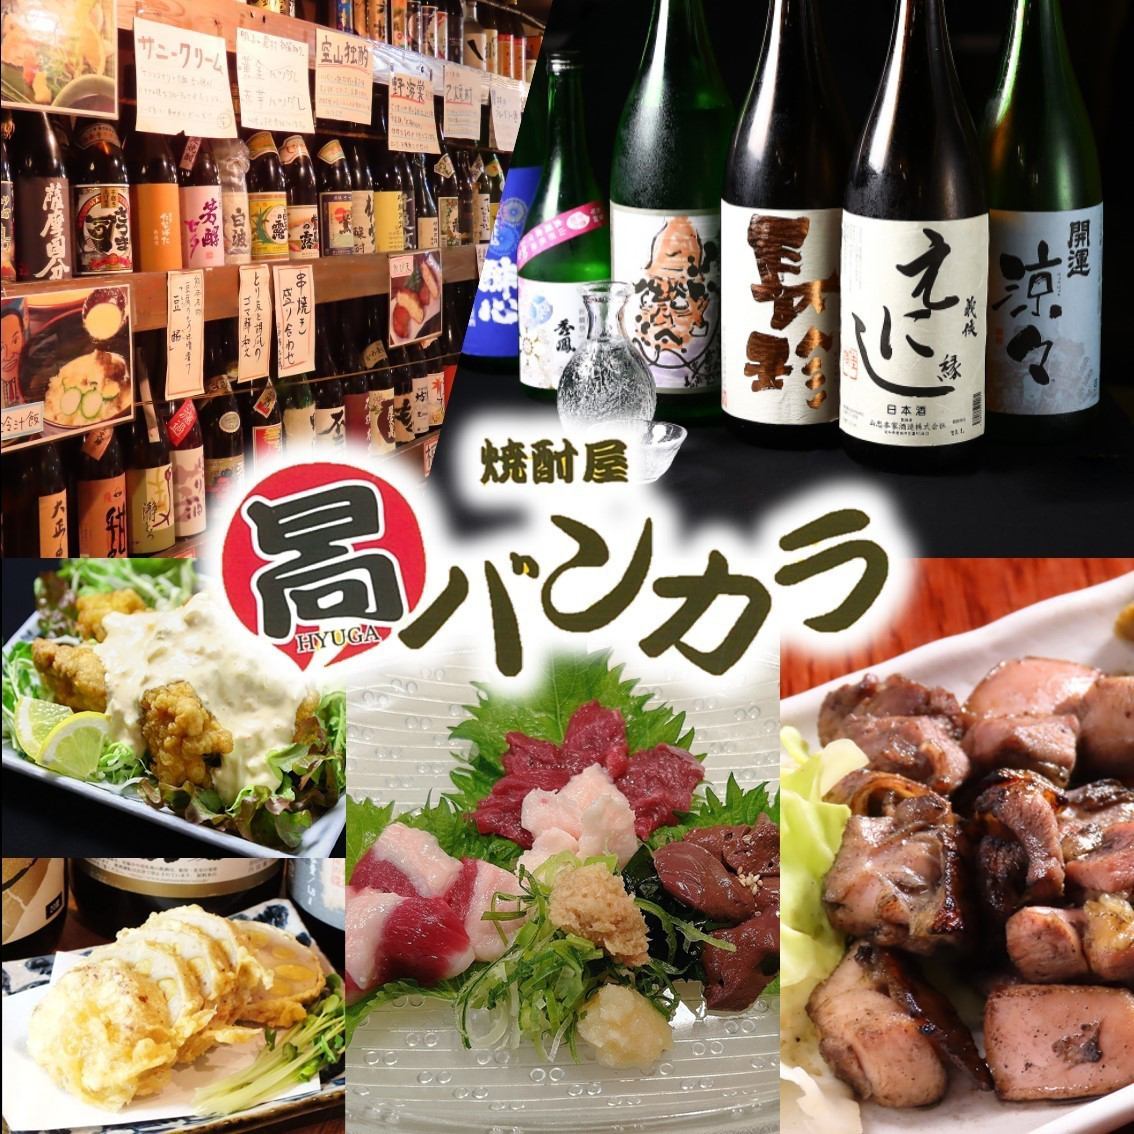 位於名古屋榮，可以品嚐到店主精心挑選的300種正宗燒酒的宮崎·九州料理居酒屋。